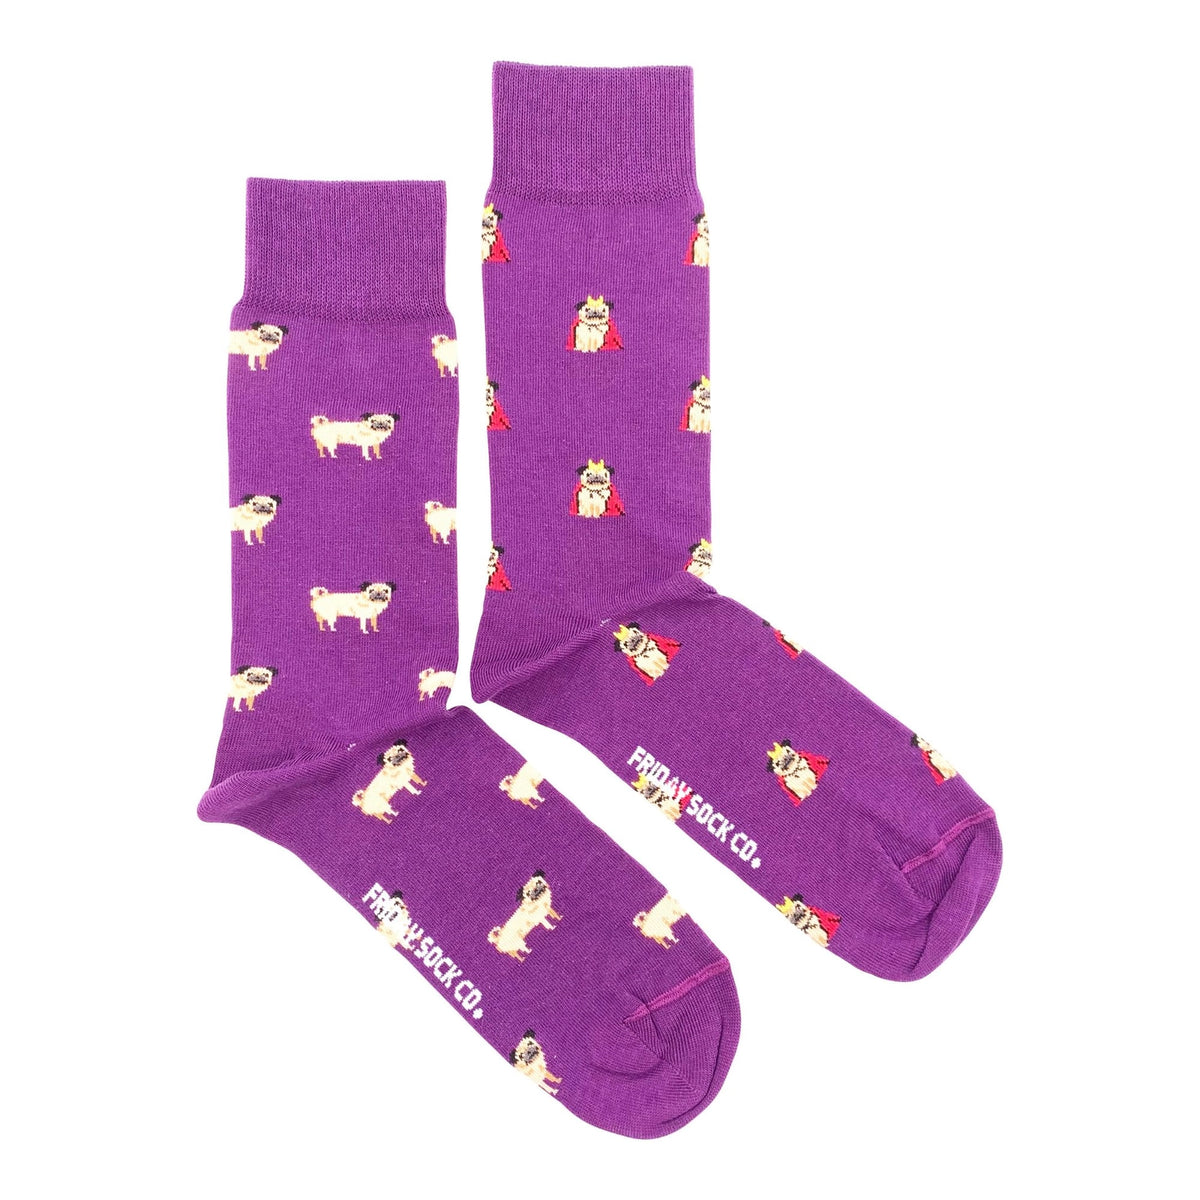 Friday Sock Co. - Men's Socks Pug Mismatched